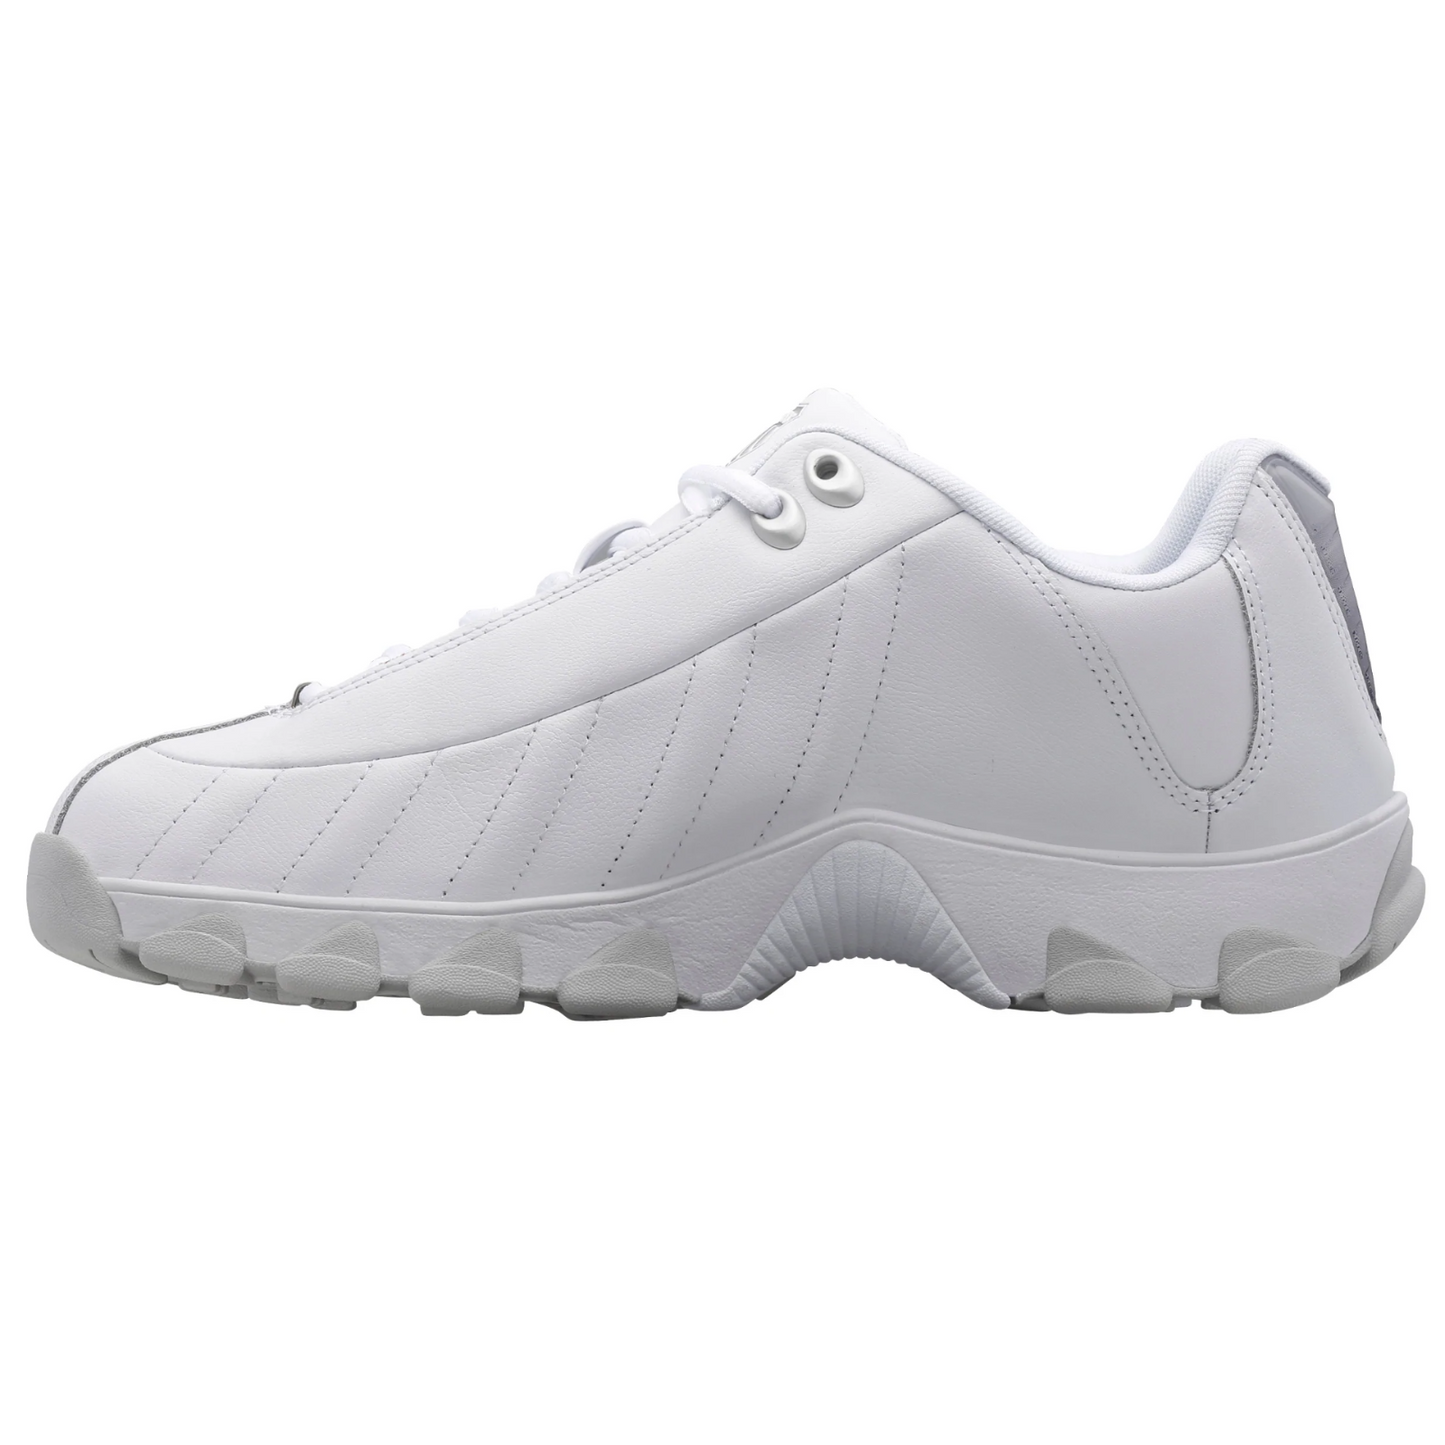 K-Swiss Men's ST329 Medium Low Top Shoe White / Black / Silver / Gel 06408-110-M